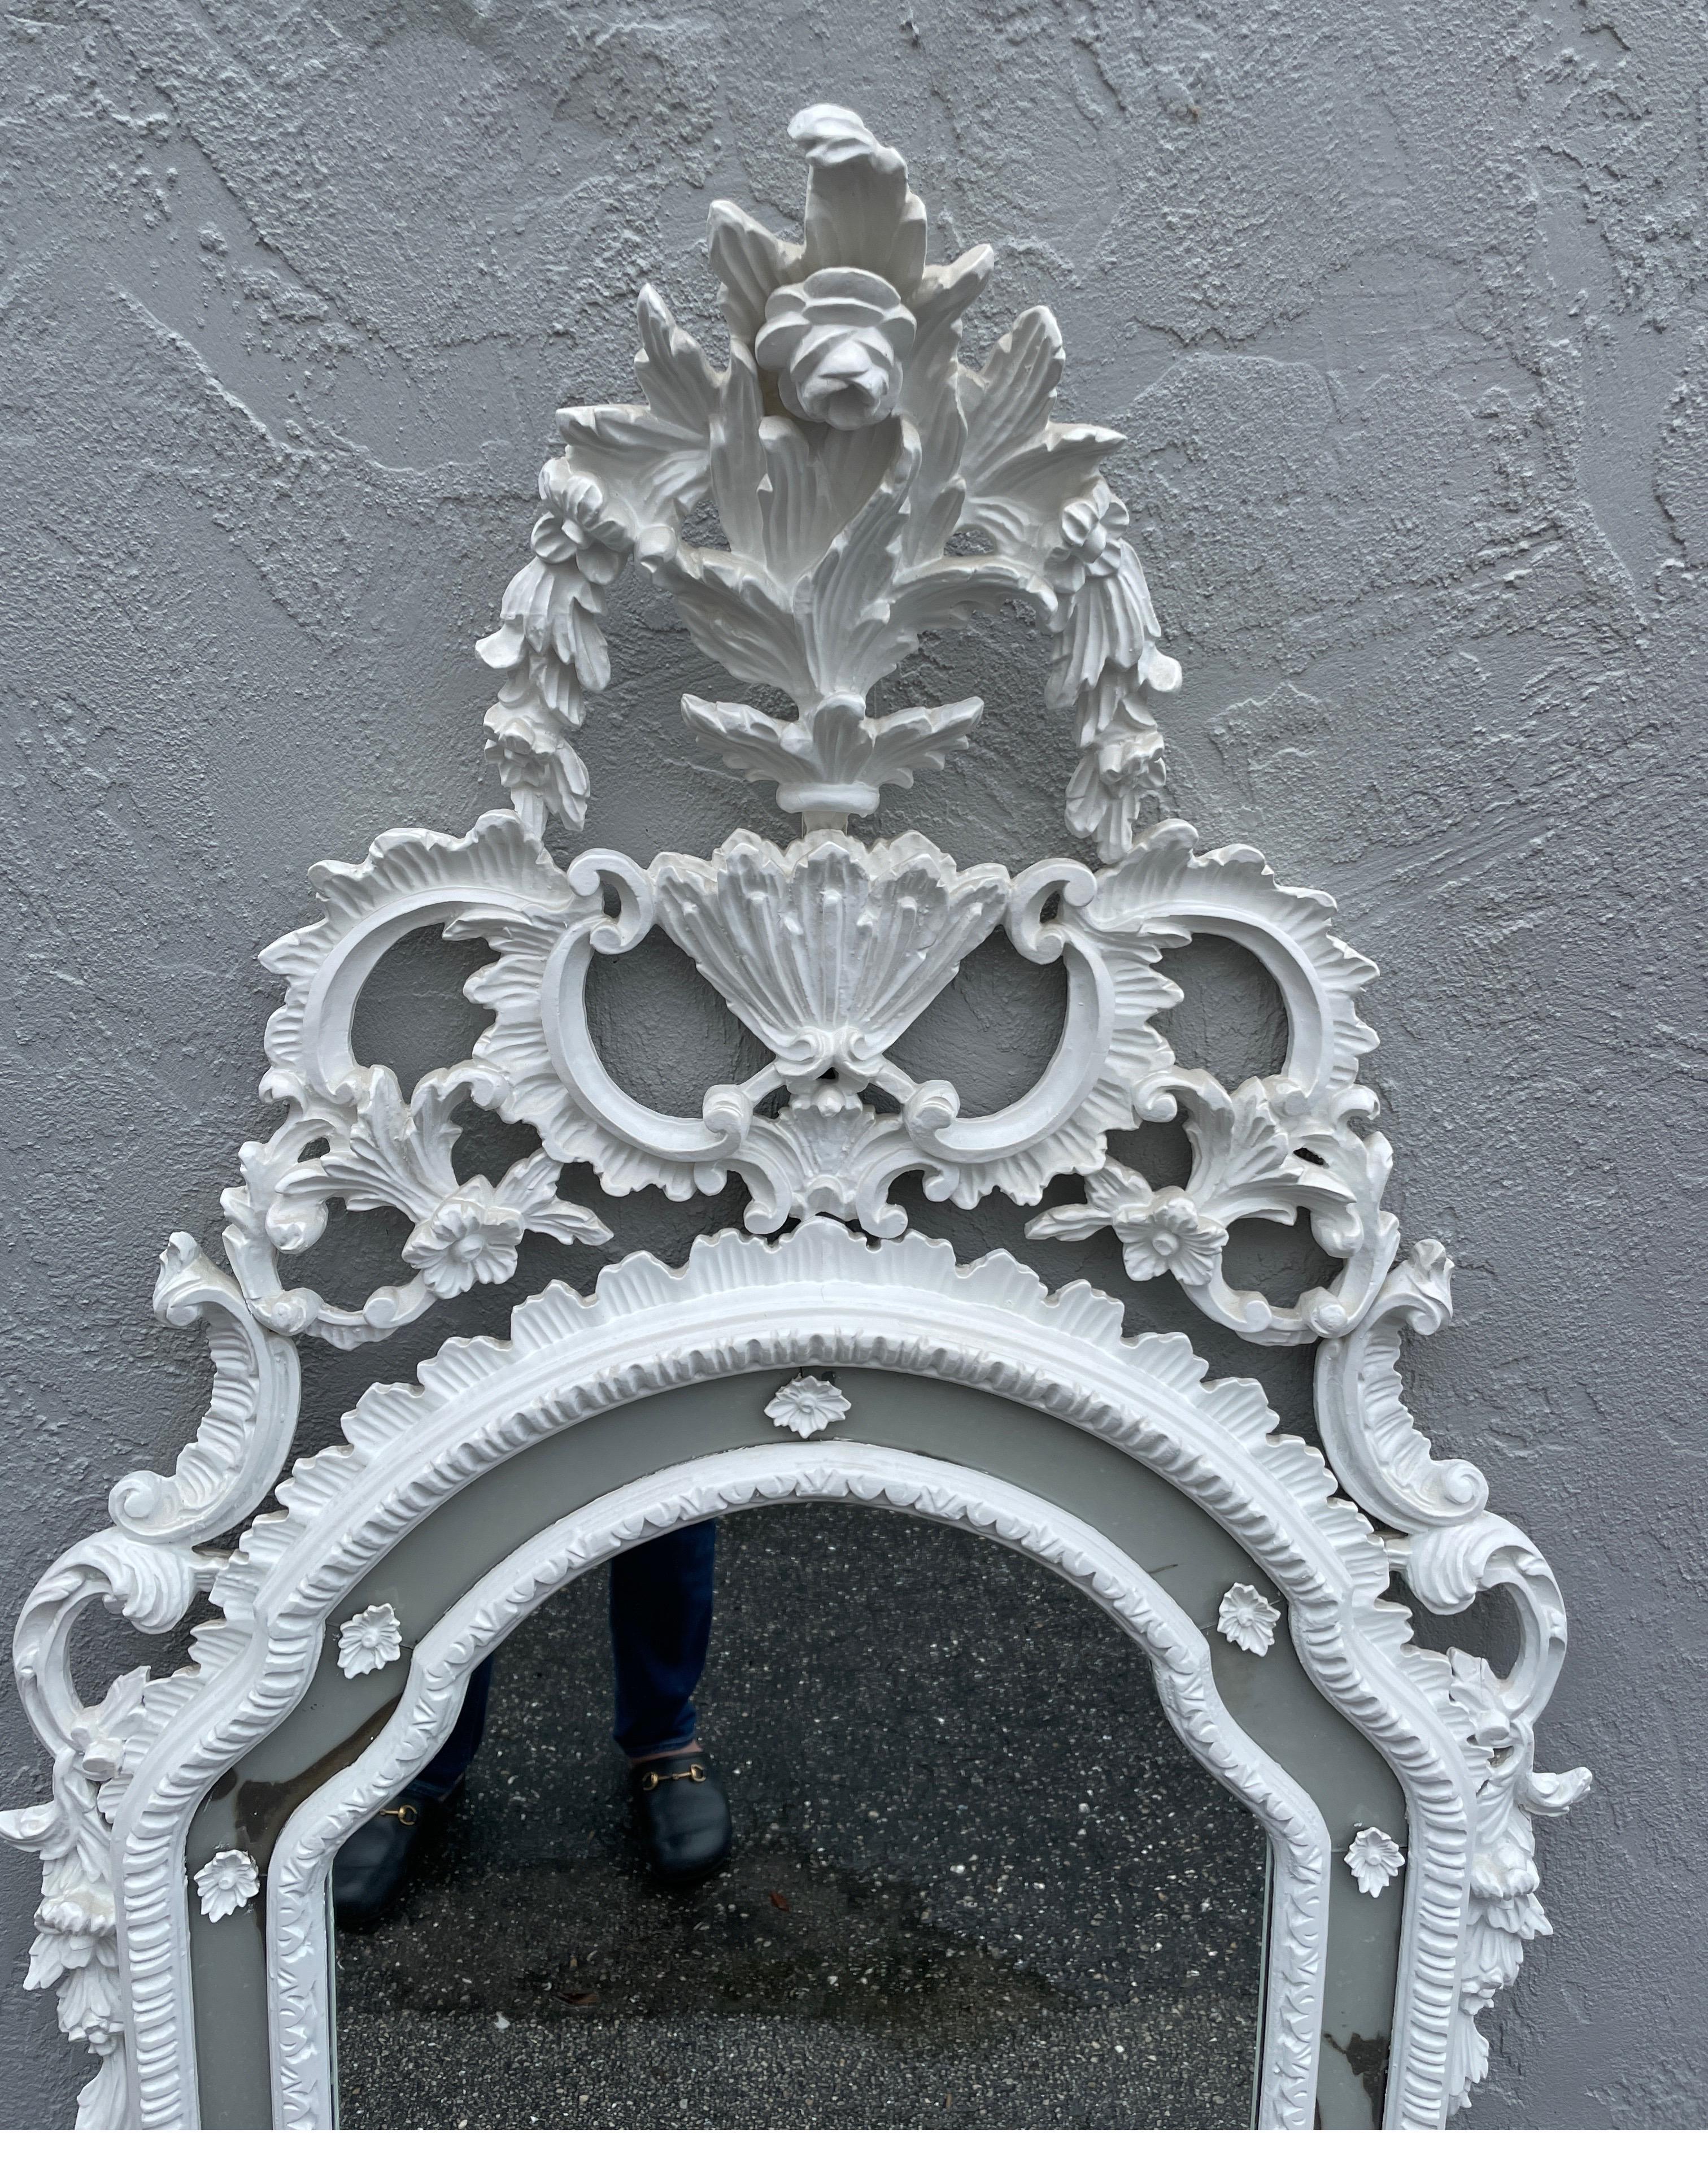 Großer geschnitzter und weiß bemalter italienischer Rokoko-Wandspiegel. Spiegelplatte in der Mitte, umgeben von einer verspiegelten Umrandung mit weißen geschnitzten Holzapplikationen.